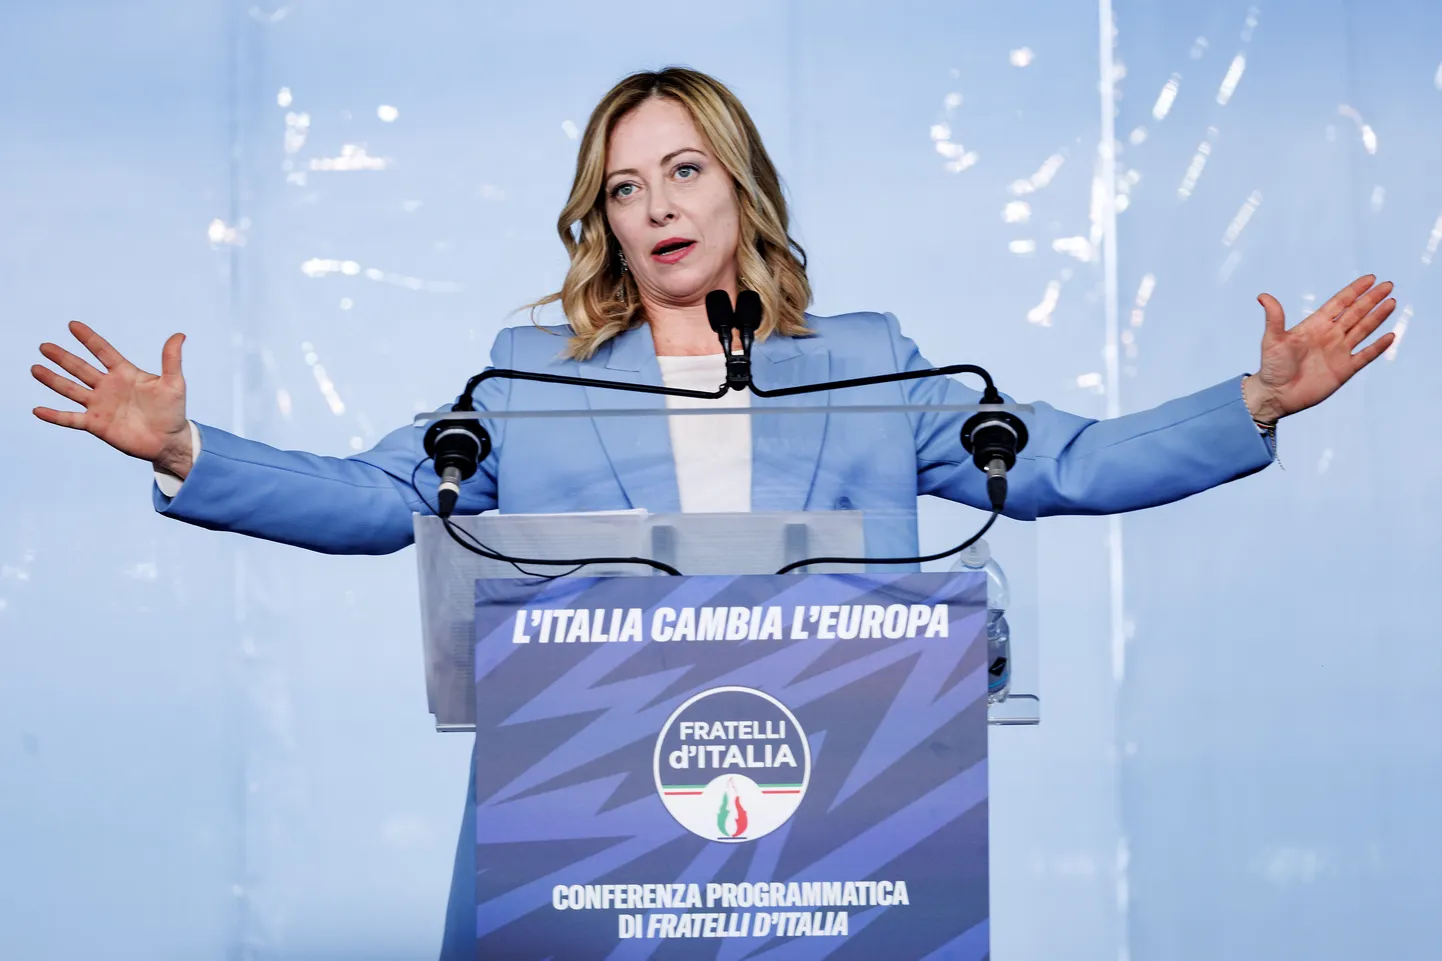 Itaalia parempoolne peaminister Giorgia Meloni kõneles parteikongressil Aadria mere äärses Pescara linnas.